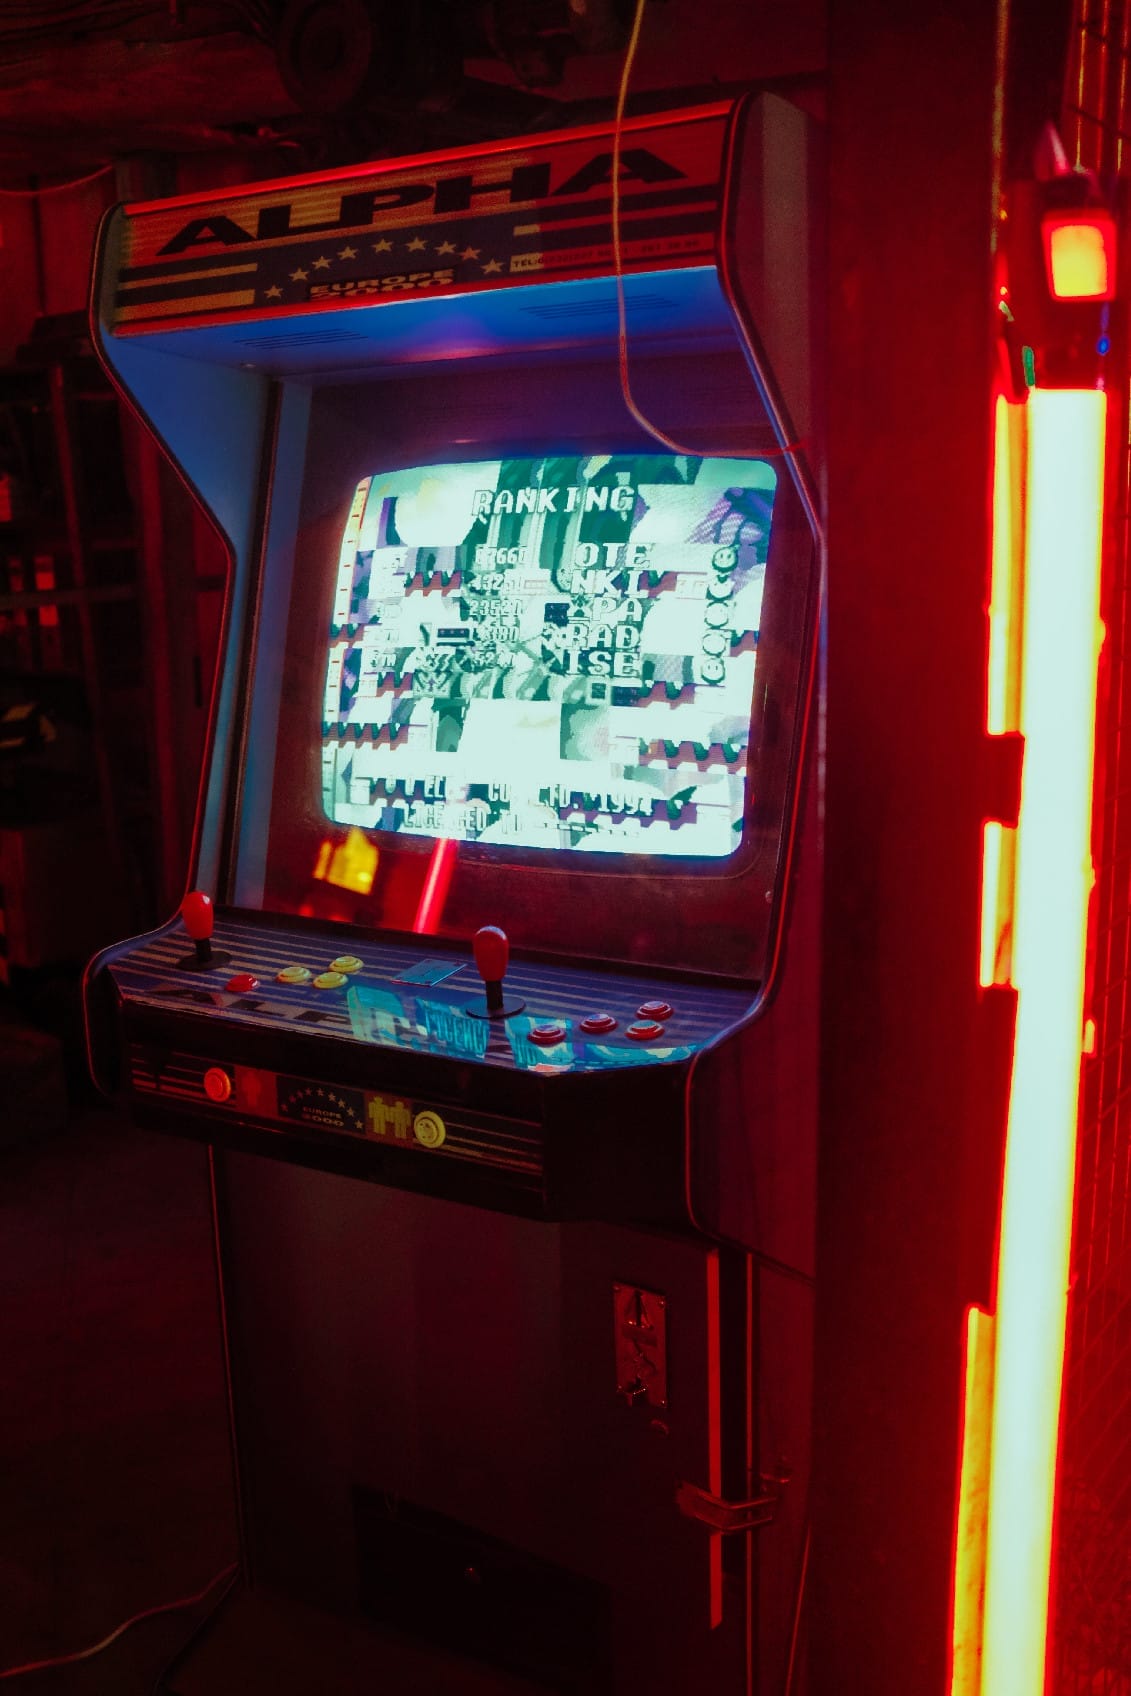 Old arcade machine